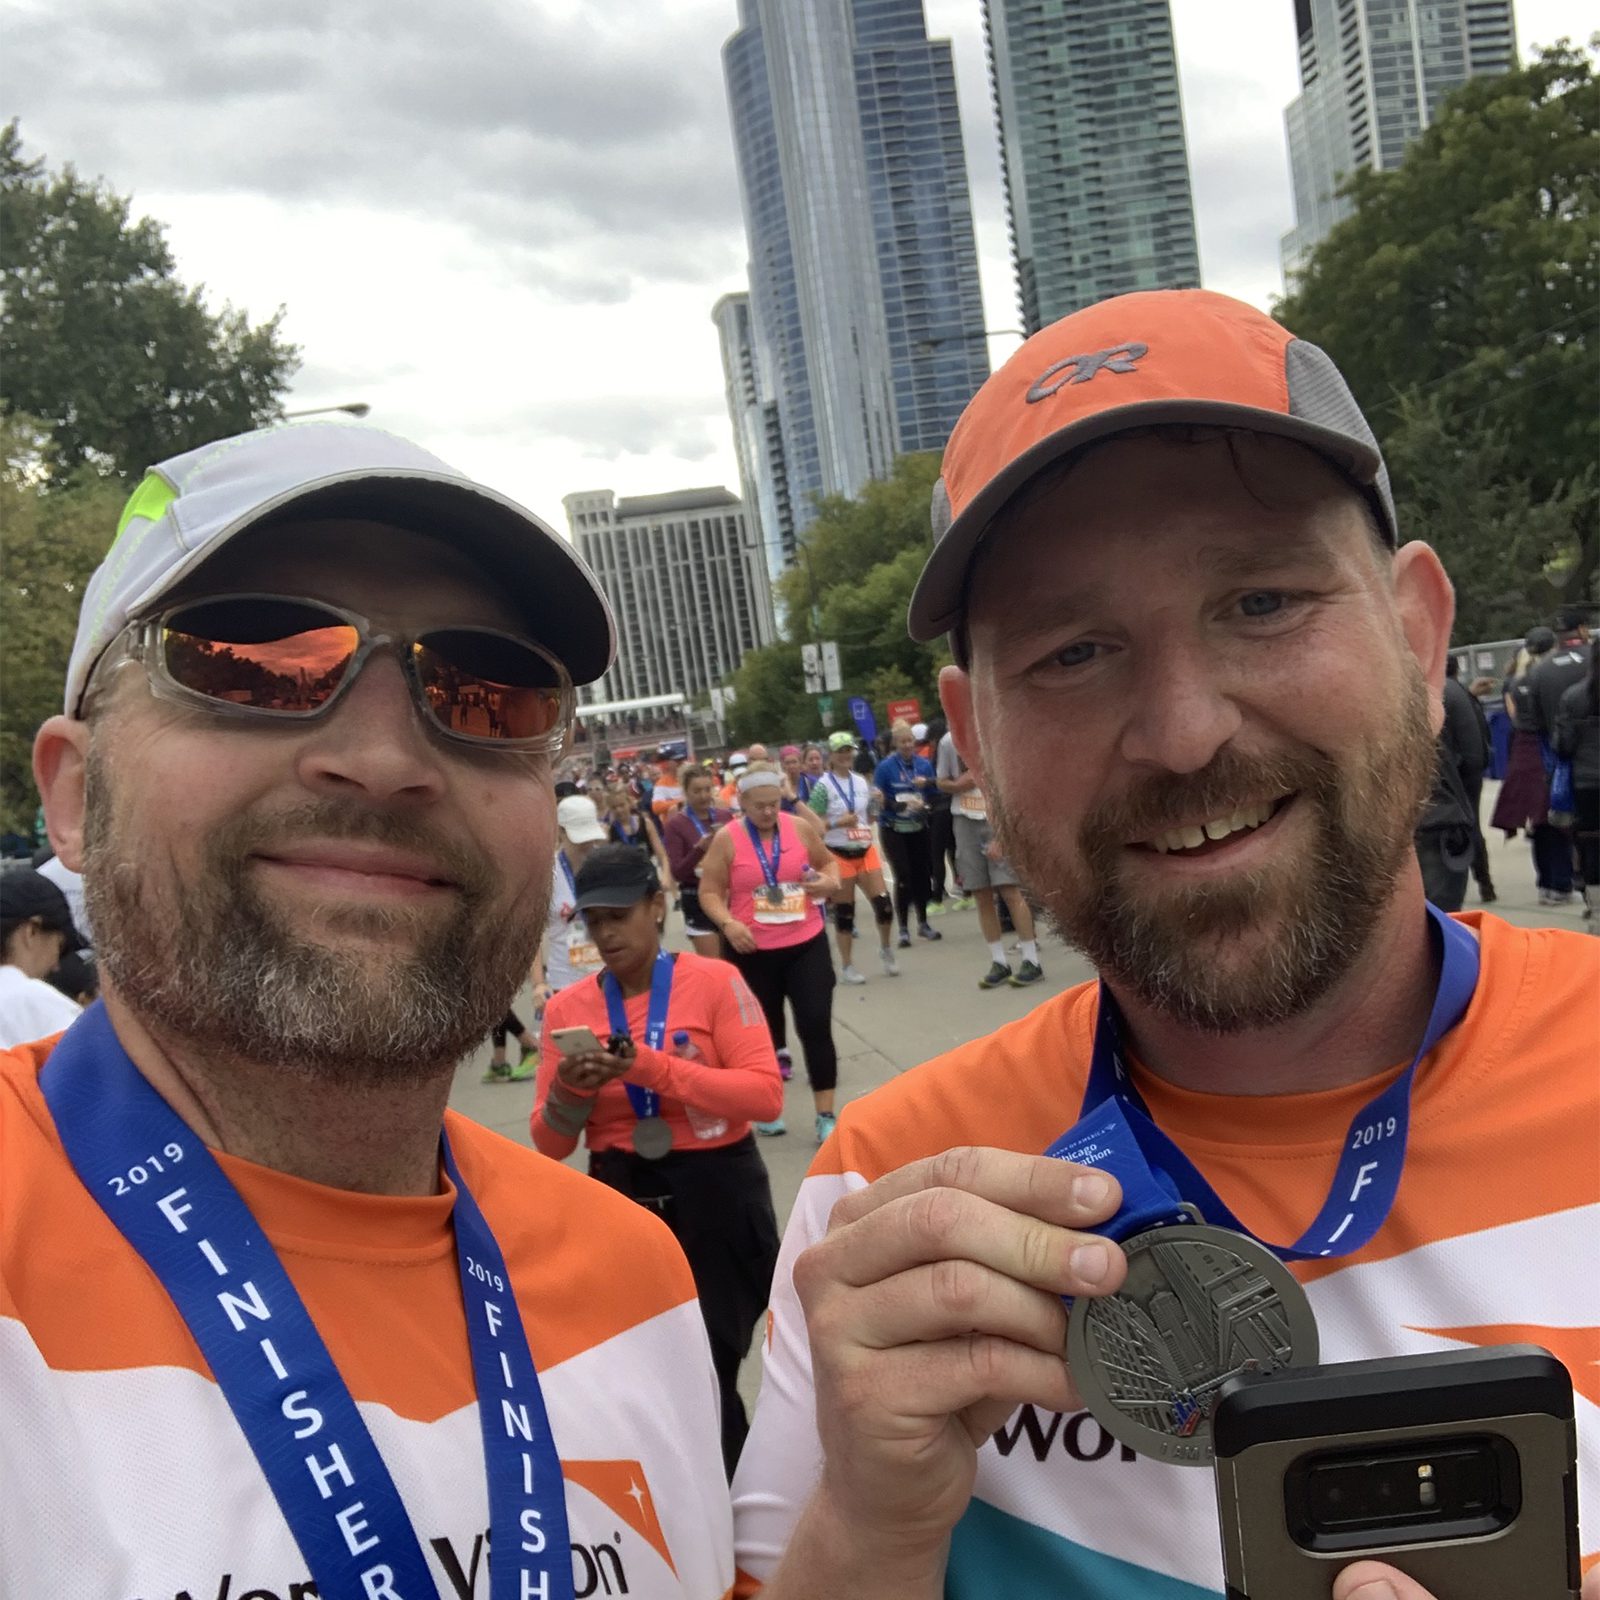 Olivet_chicago_marathon_team_world_vision_water_Van Kley_2019_web1.jpg